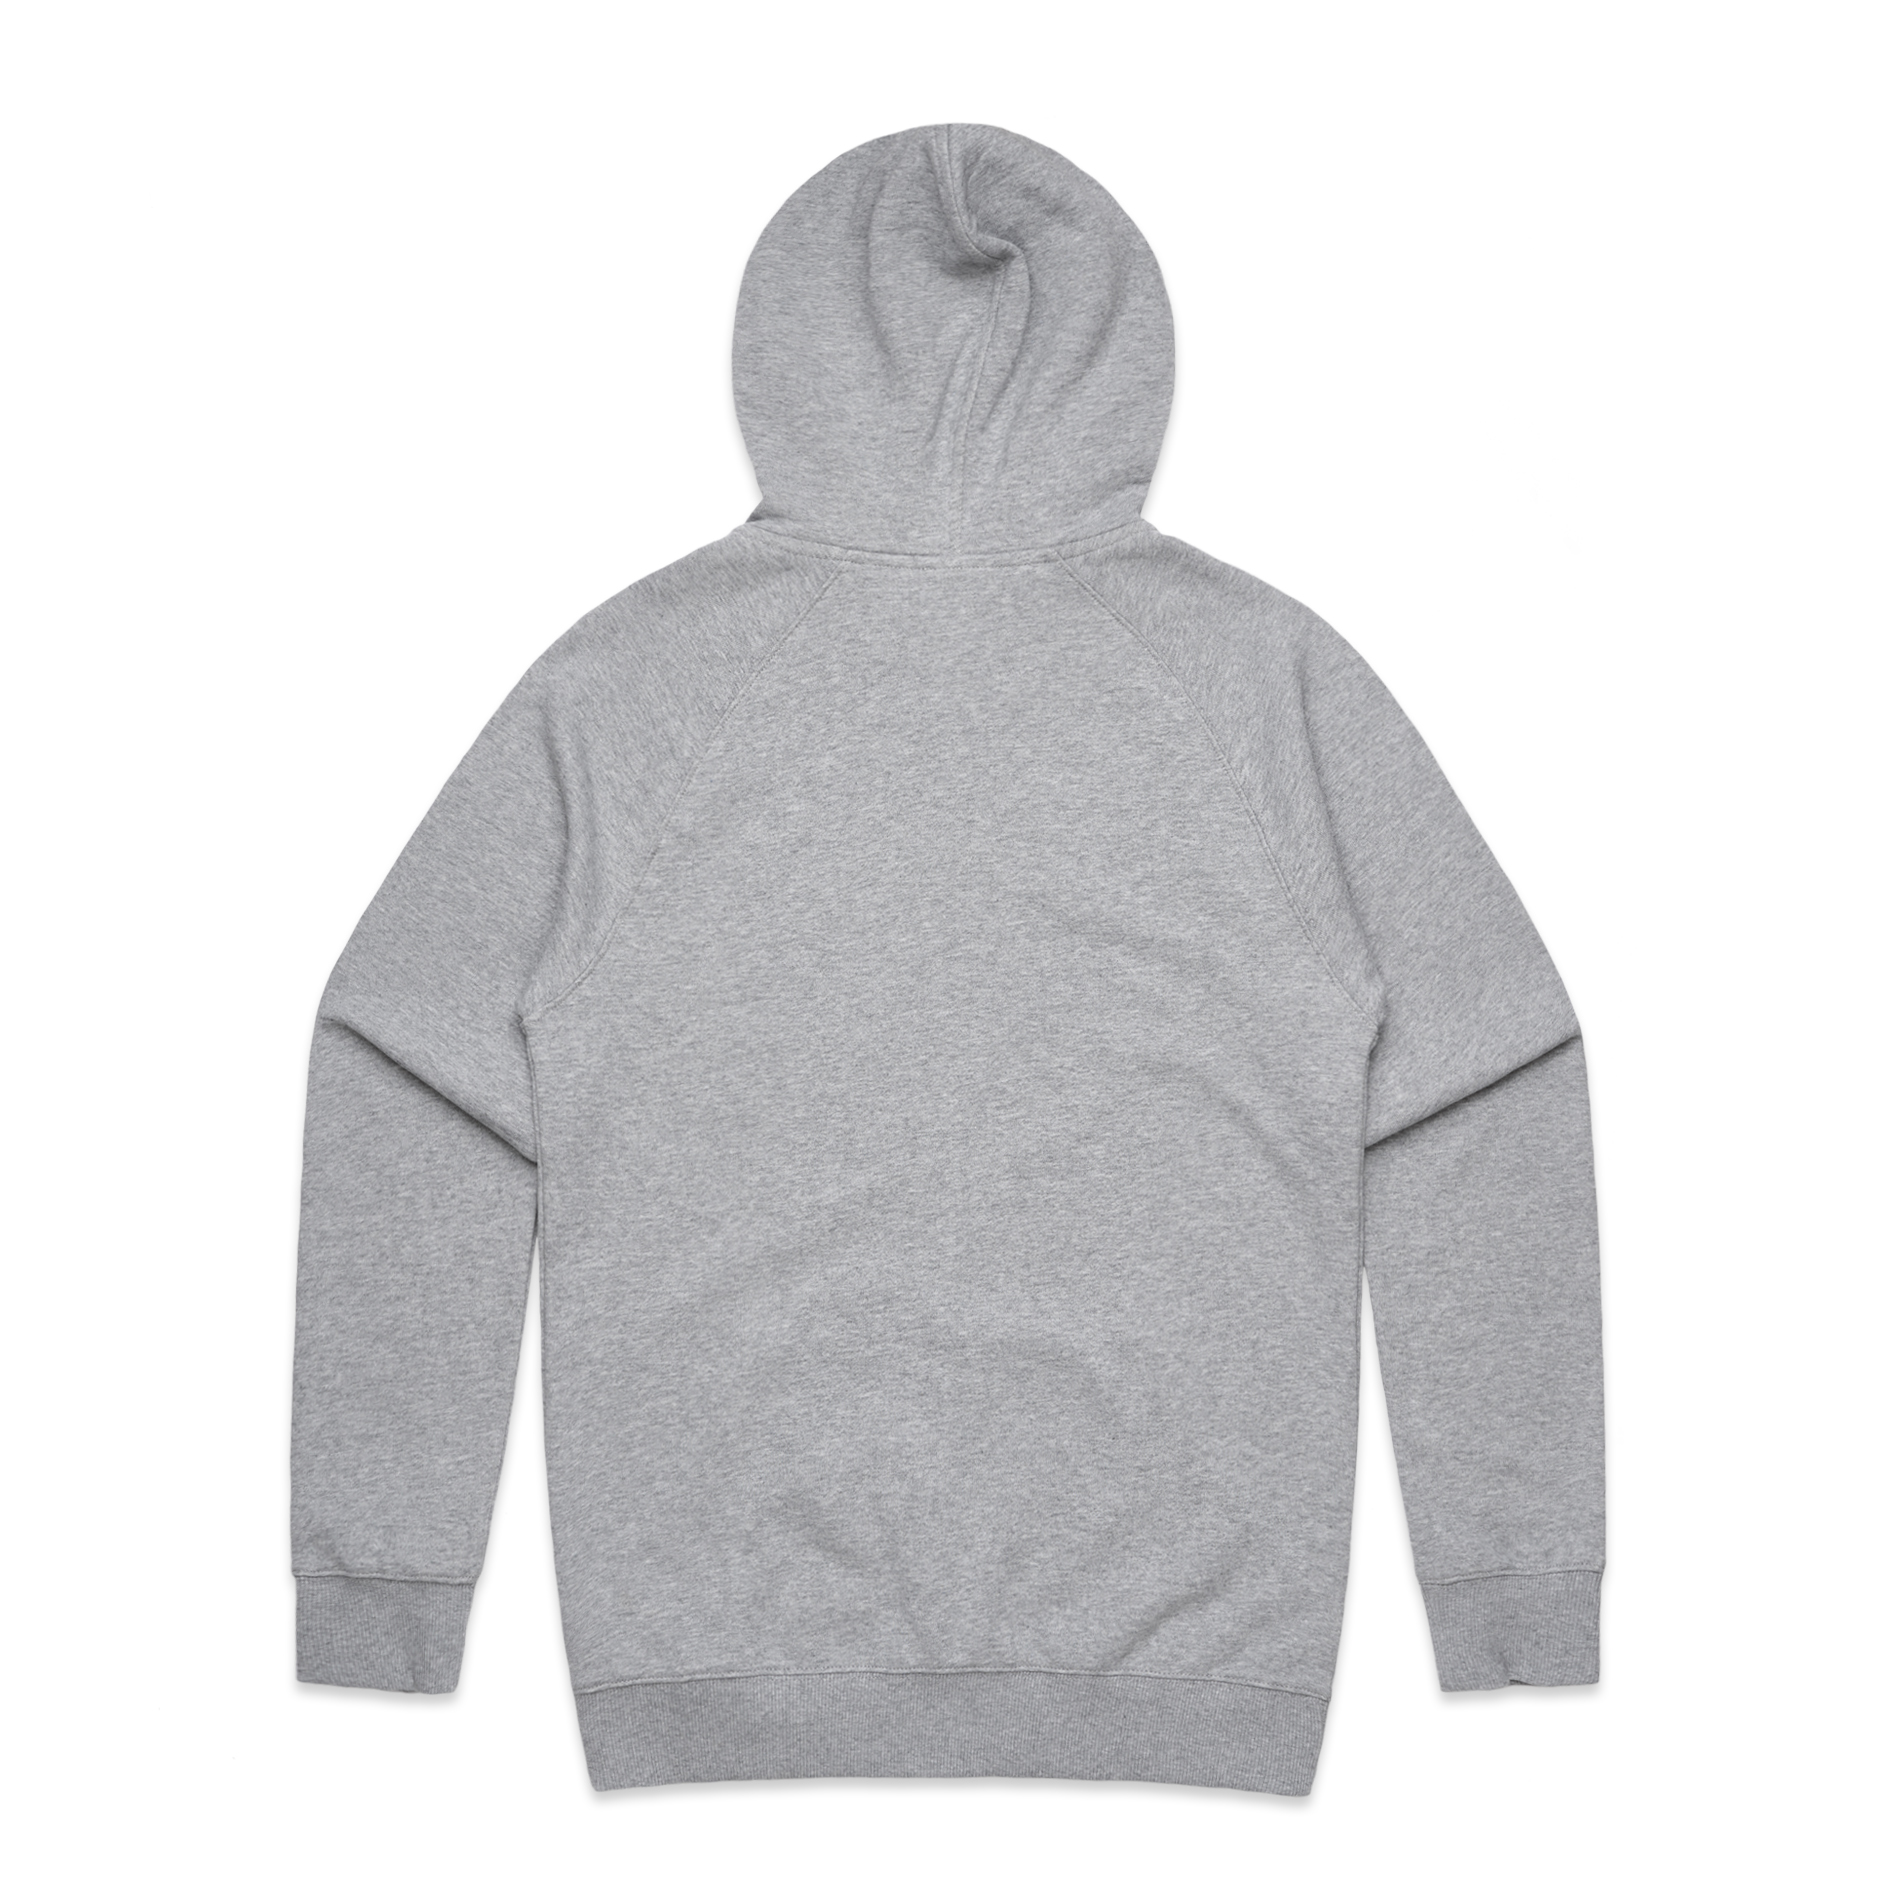 Men's Premium Zip Hood - Grey Marle 5122 - Uniform Edit